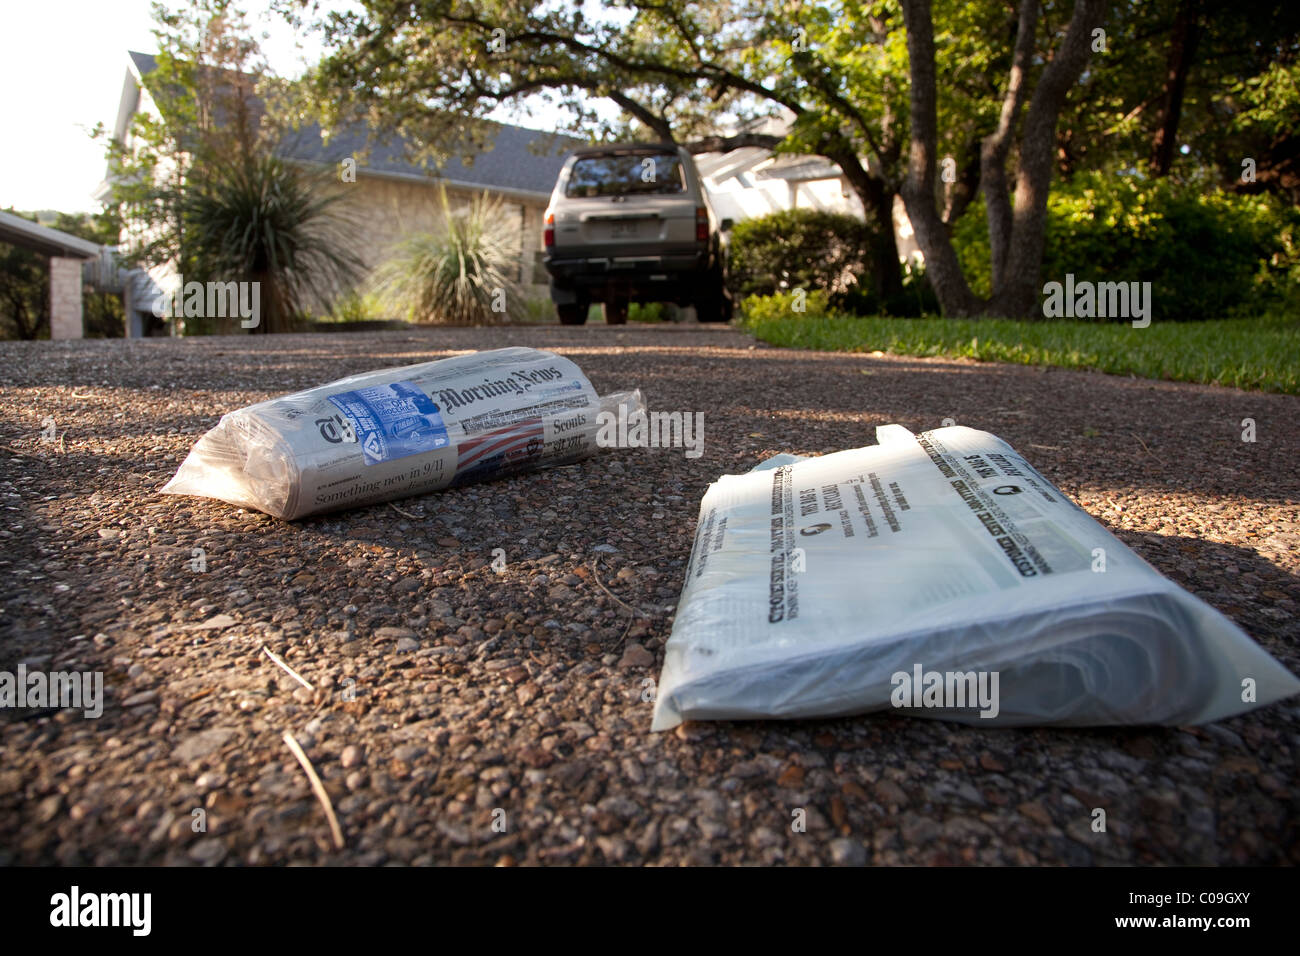 Copie livrés à domicile de quotidiens enveloppés dans des sacs en plastique s'appuie sur entrée de résidence à Austin au Texas Banque D'Images